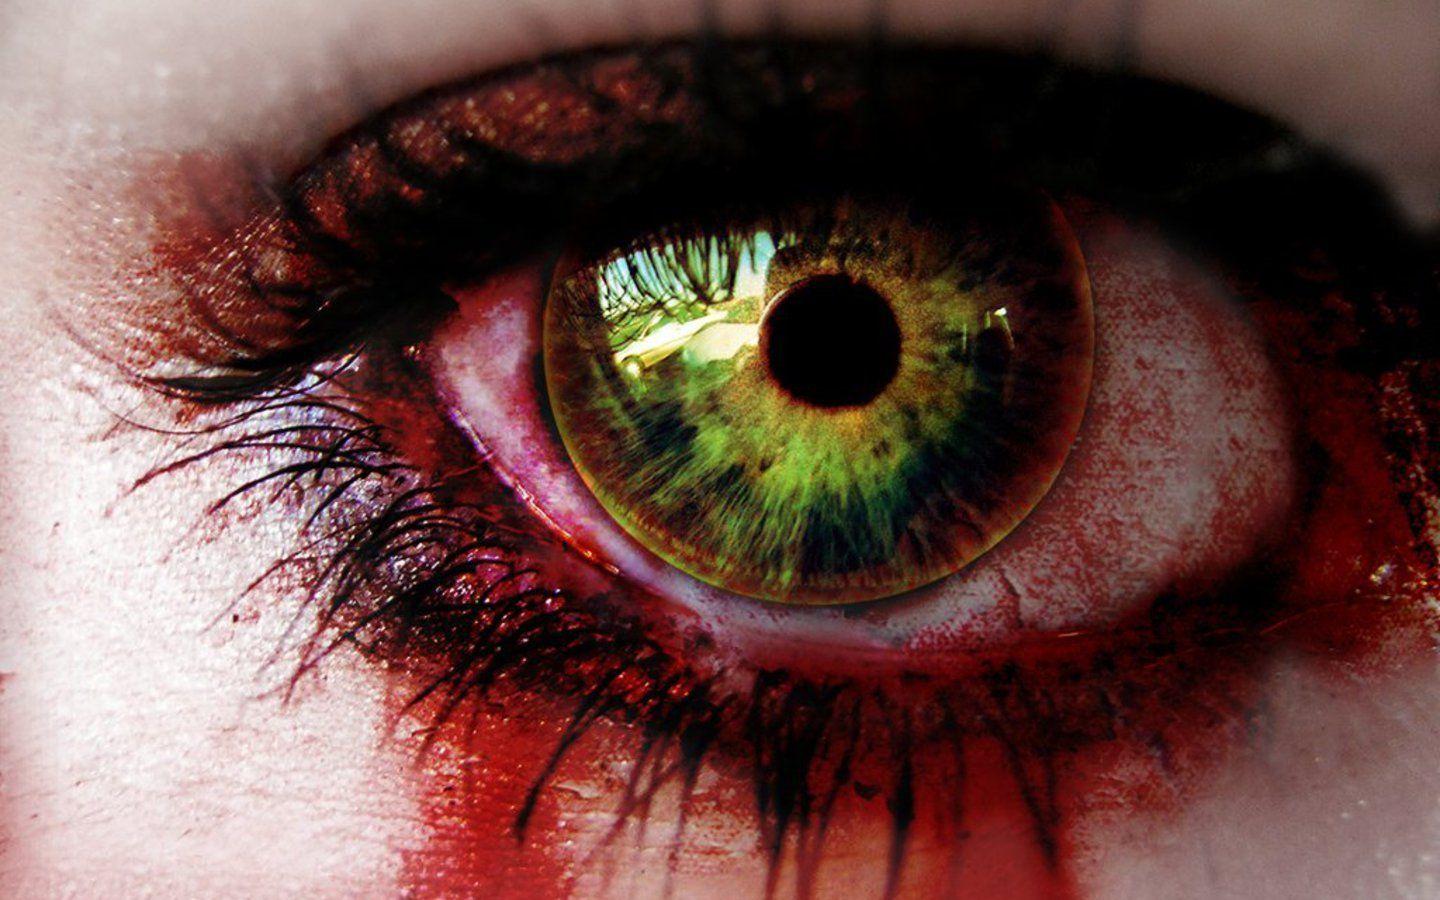 Horror evil eyes in fear Wallpaper 1440x900. PIXHOME. Eyes